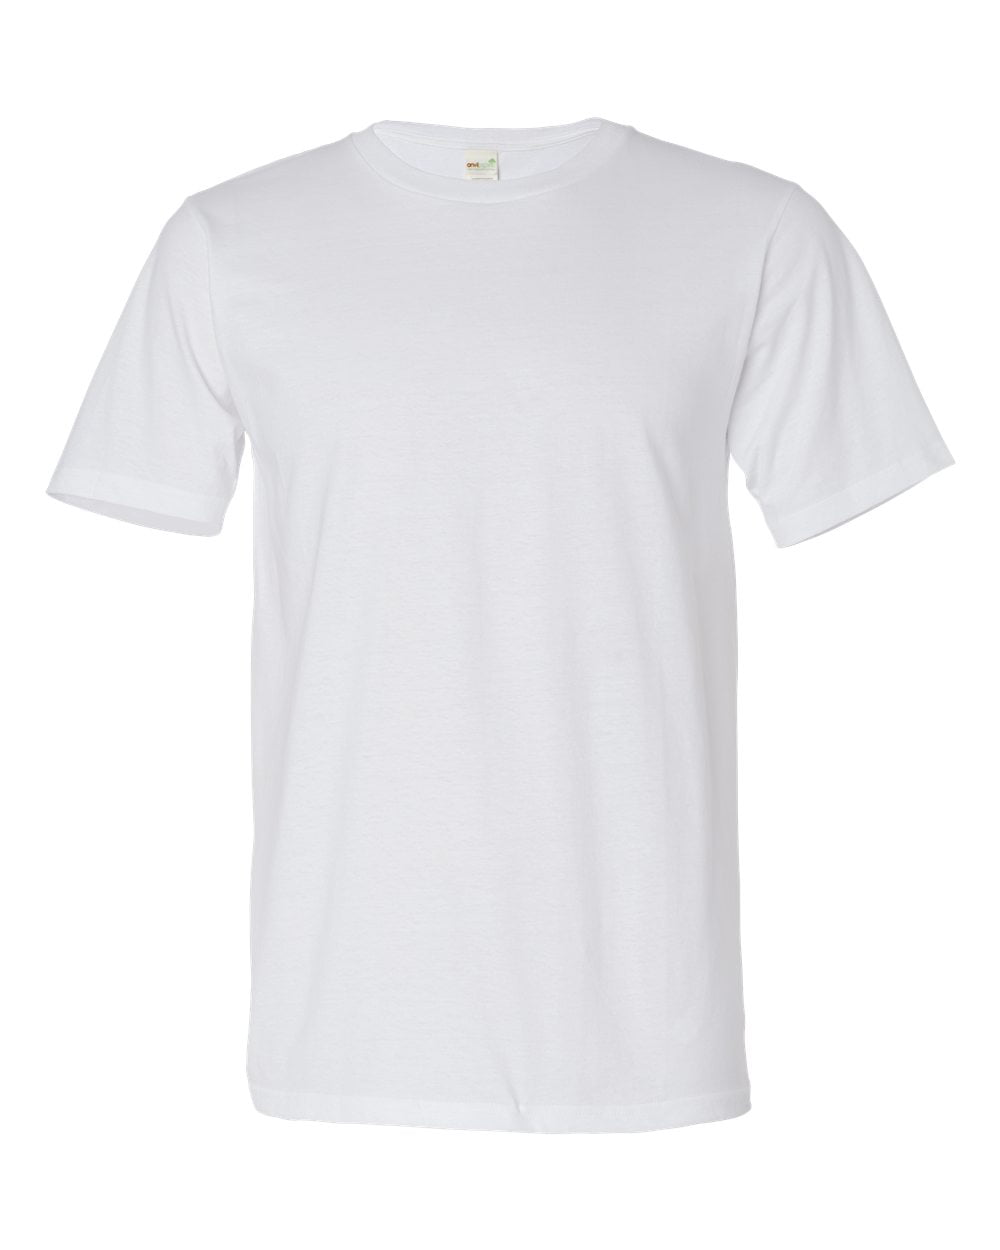 Anvil Lightweight T-Shirt - Walmart.com